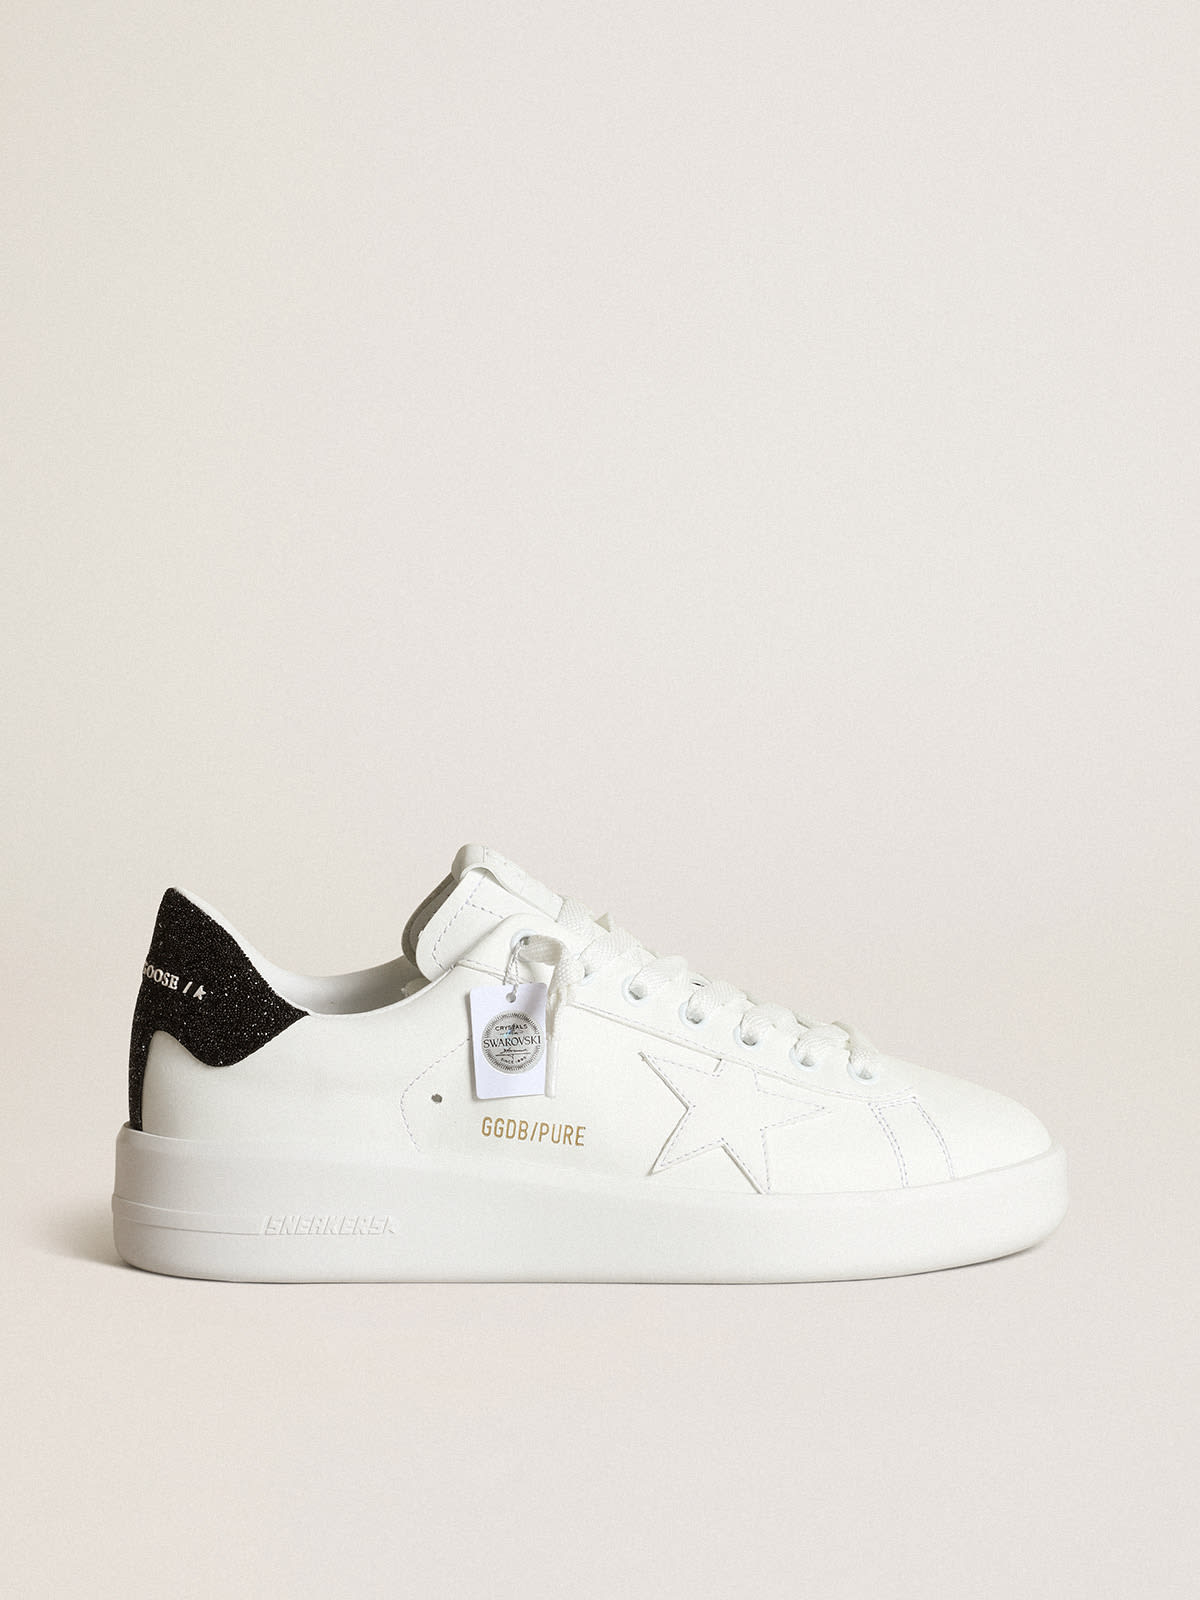 Golden Goose - Sneaker Purestar in pelle bianca con stella ton sur ton e talloncino in cristalli Swarovski neri in 